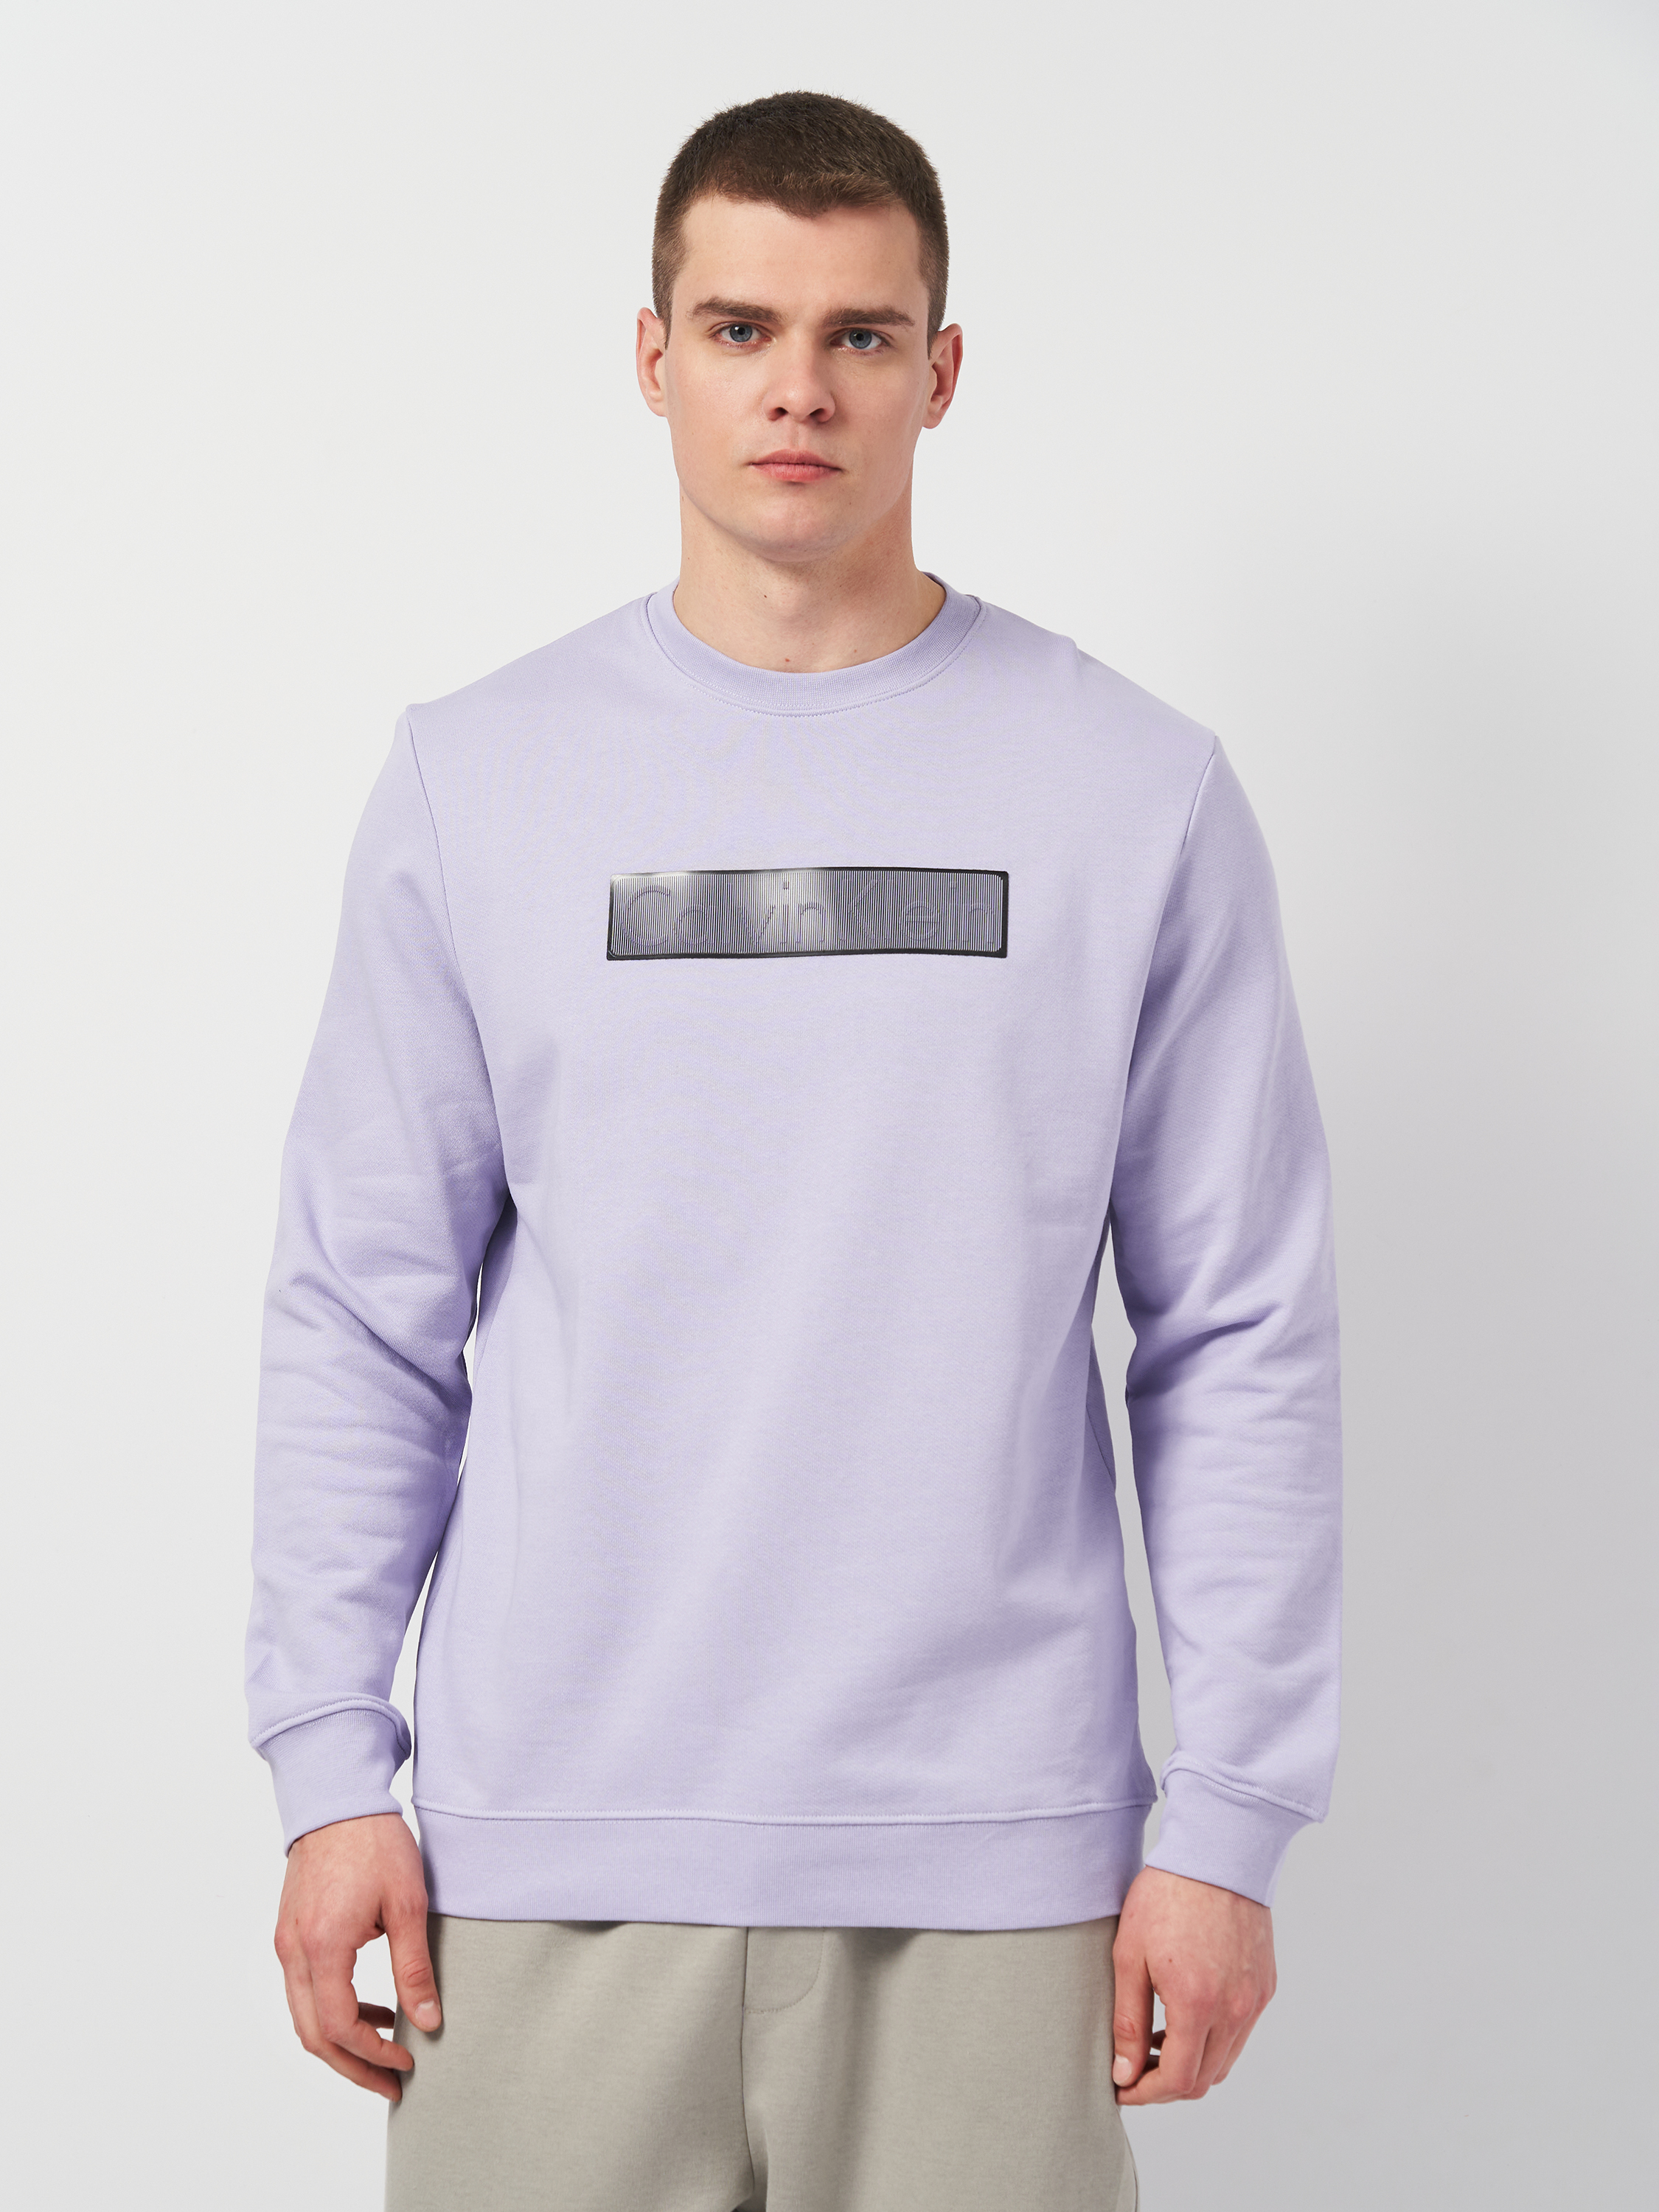 Акция на Світшот чоловічий Calvin Klein Jeans 11295.4 S (44) Фіолетовий от Rozetka